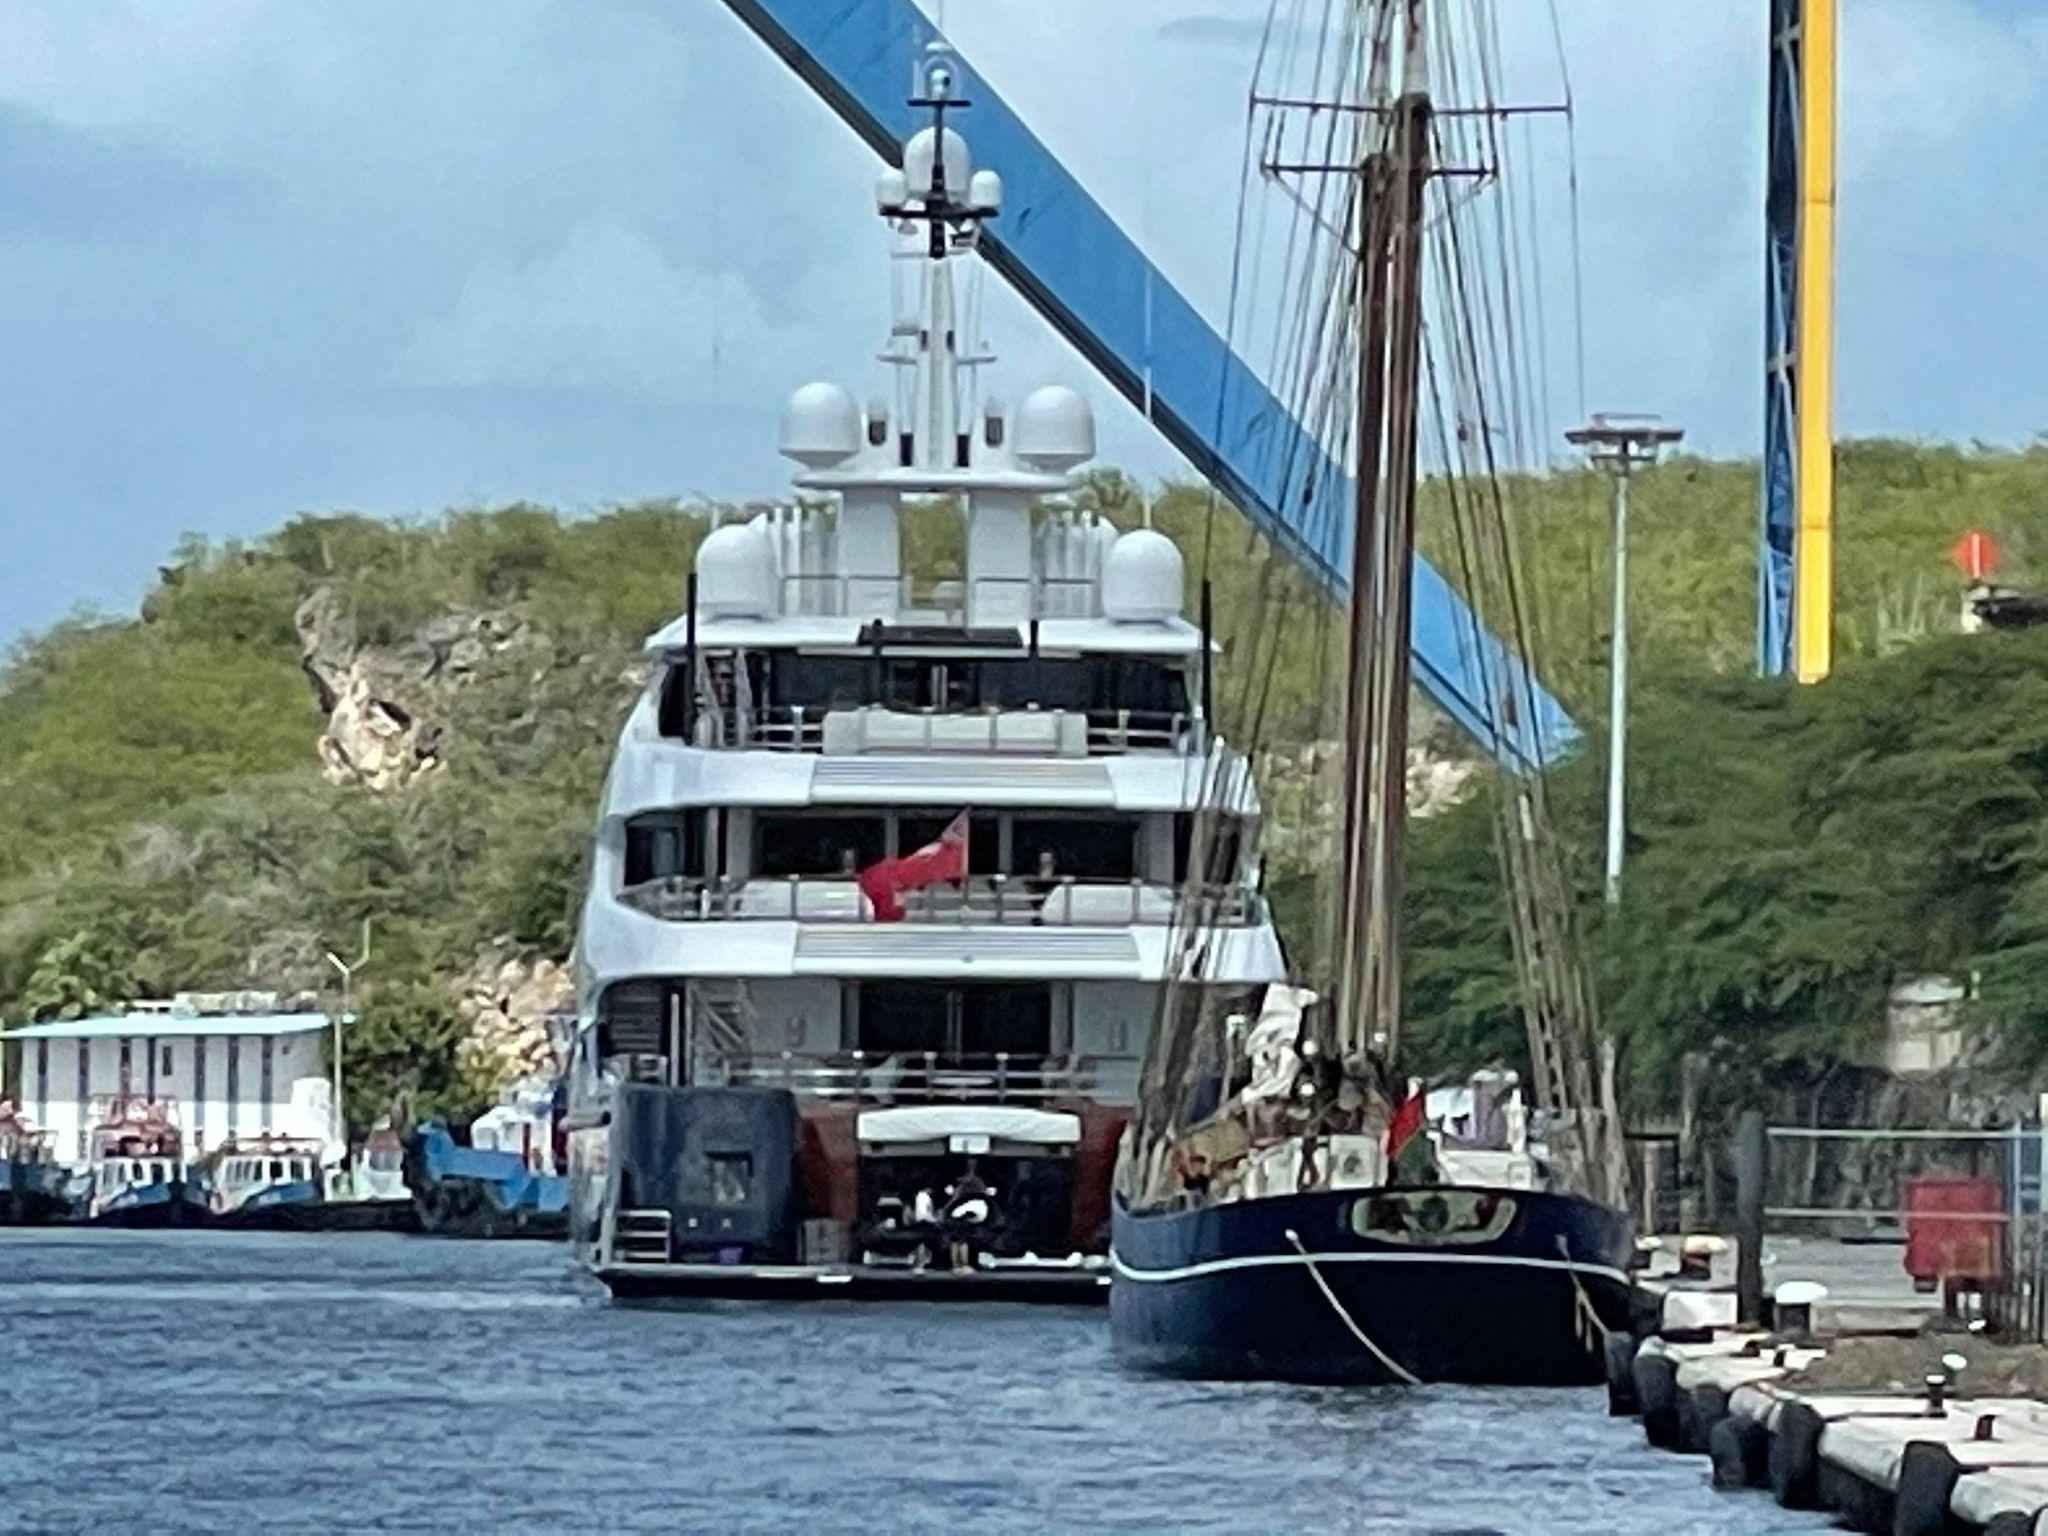 Lo yacht Barbara dell'Oceanco a Willemstad Curacao